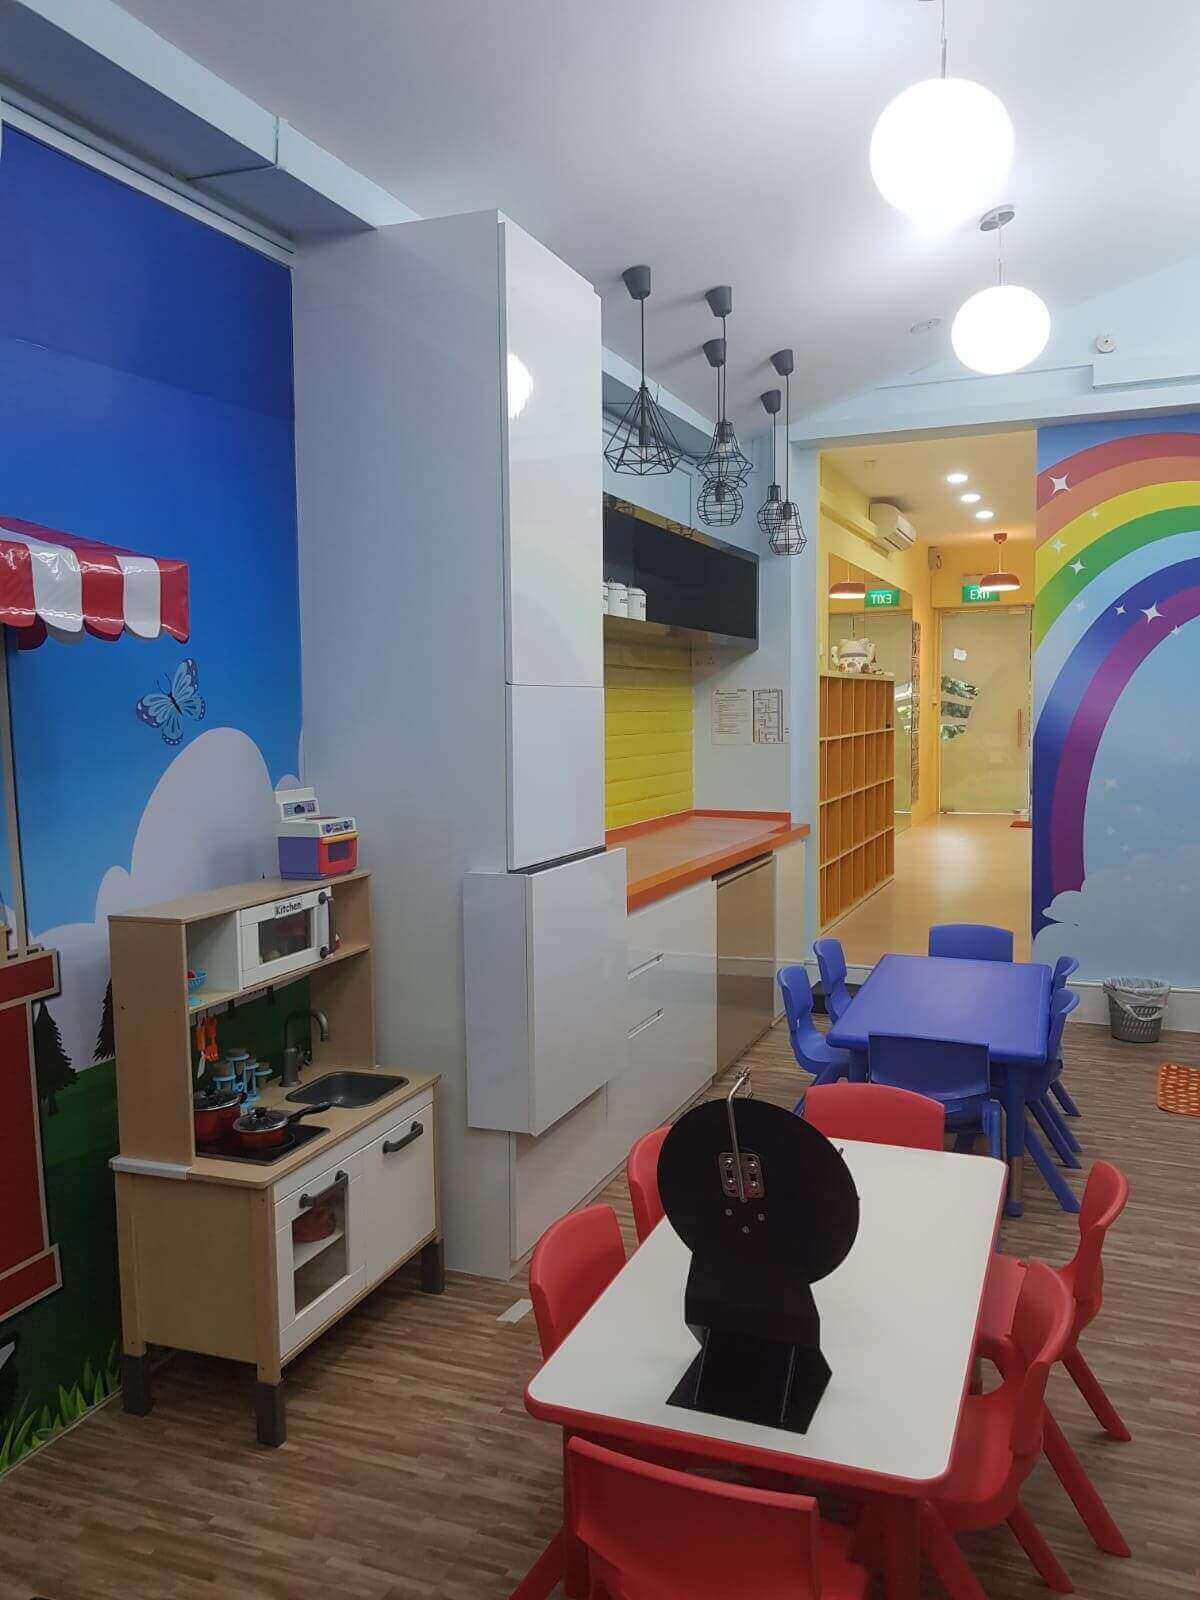 (已失效)Newly Set Up Childcare Centre Good Sheer Size For Bigger Capacity